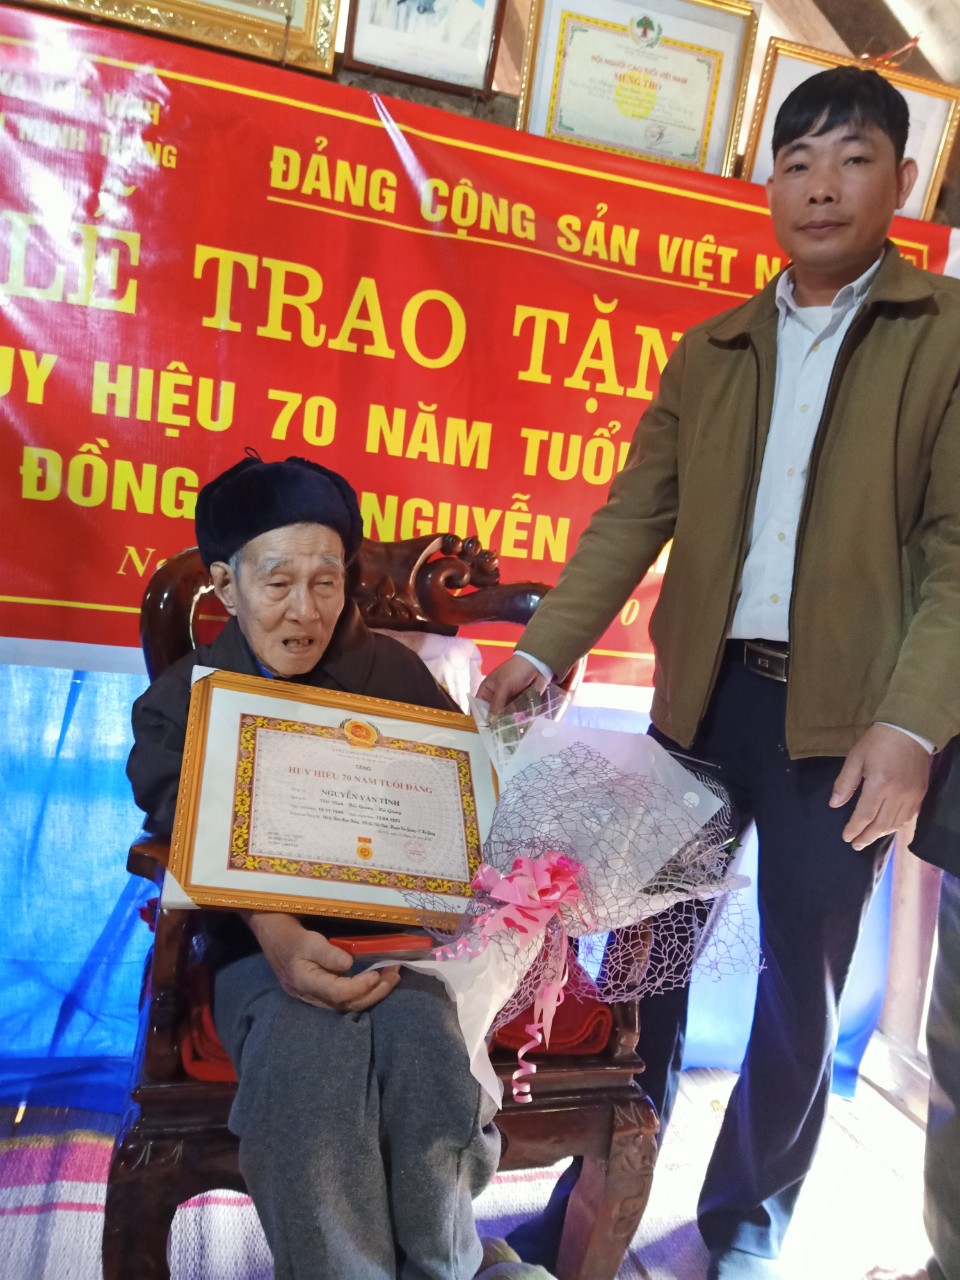 Ngày 17/02/2020, tại Nhà văn hóa thôn Minh Thắng, Ðảng ủy xã Việt Vinh đã tổ chức Lễ trao tặng Huy hiệu 70 năm tuổi Đảng cho đồng chí Nguyễn Văn Tình đảng viên chi bộ thôn Minh Thắng.